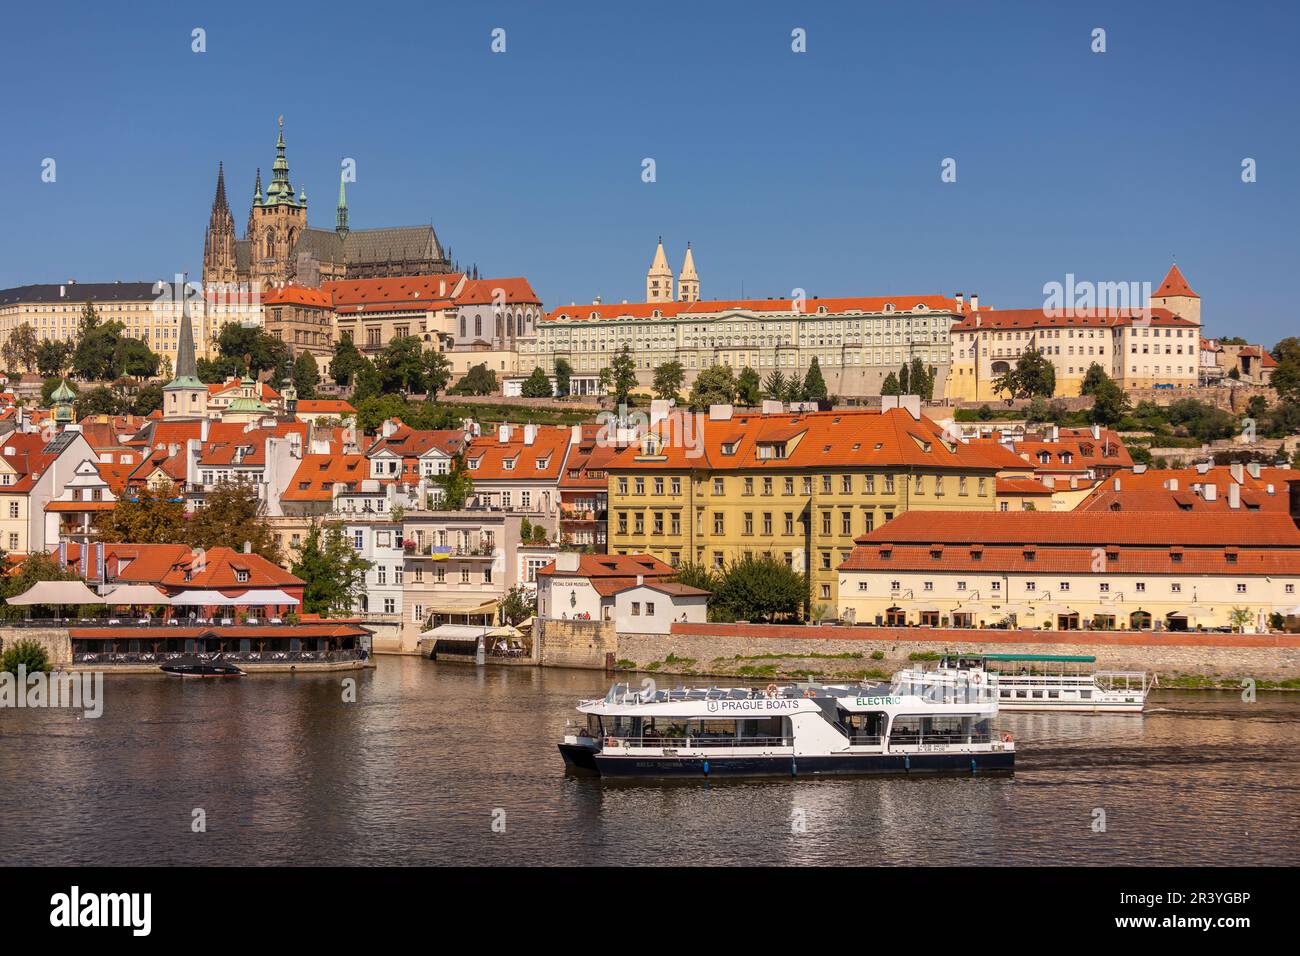 PRAG, TSCHECHISCHE REPUBLIK, EUROPA - Prager Skyline mit Prager Burg und St. Veitsdom und Burgviertel, Hradcany, auf der Moldau. Elektrischer bo Stockfoto